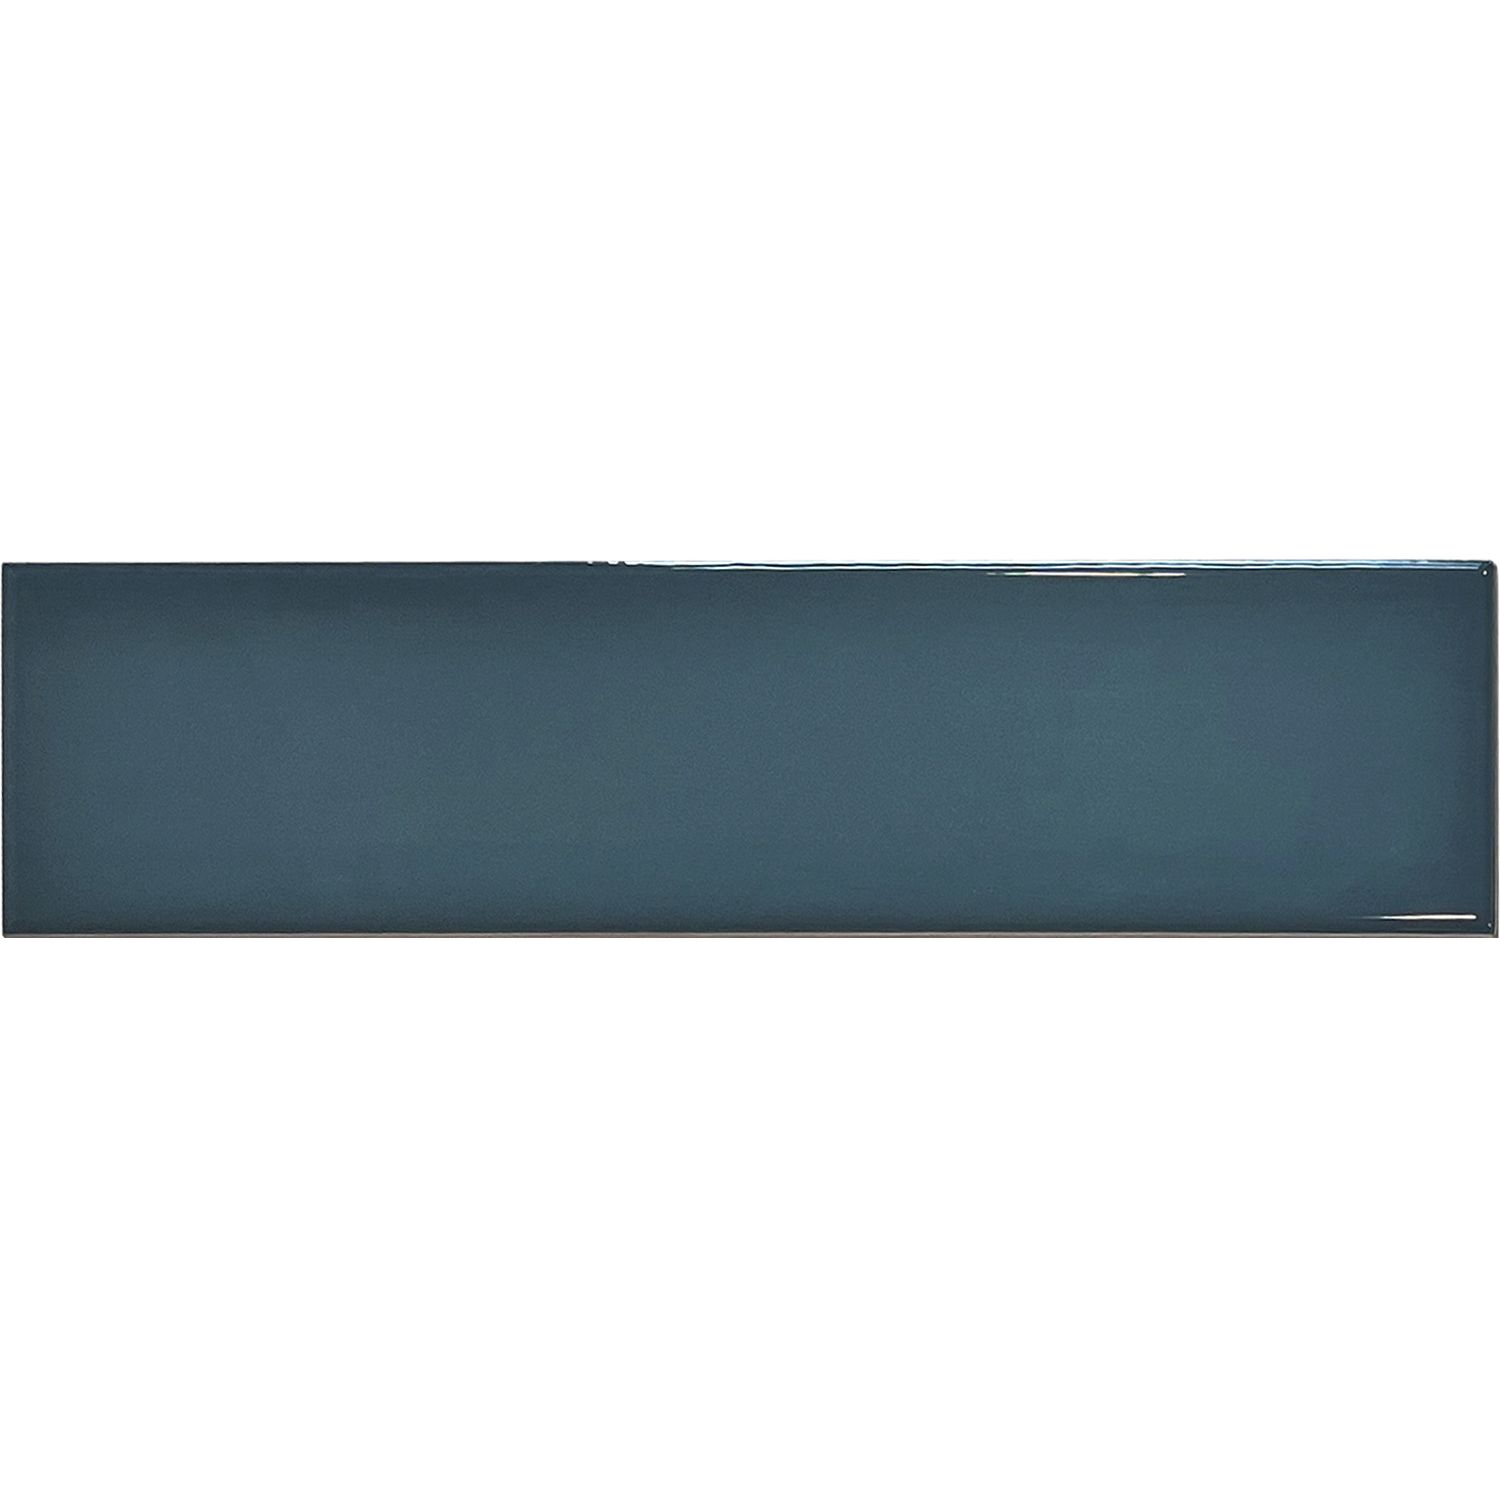 Керамическая Плитка Decocer Monte Monte Blue 10x40 см С0005605